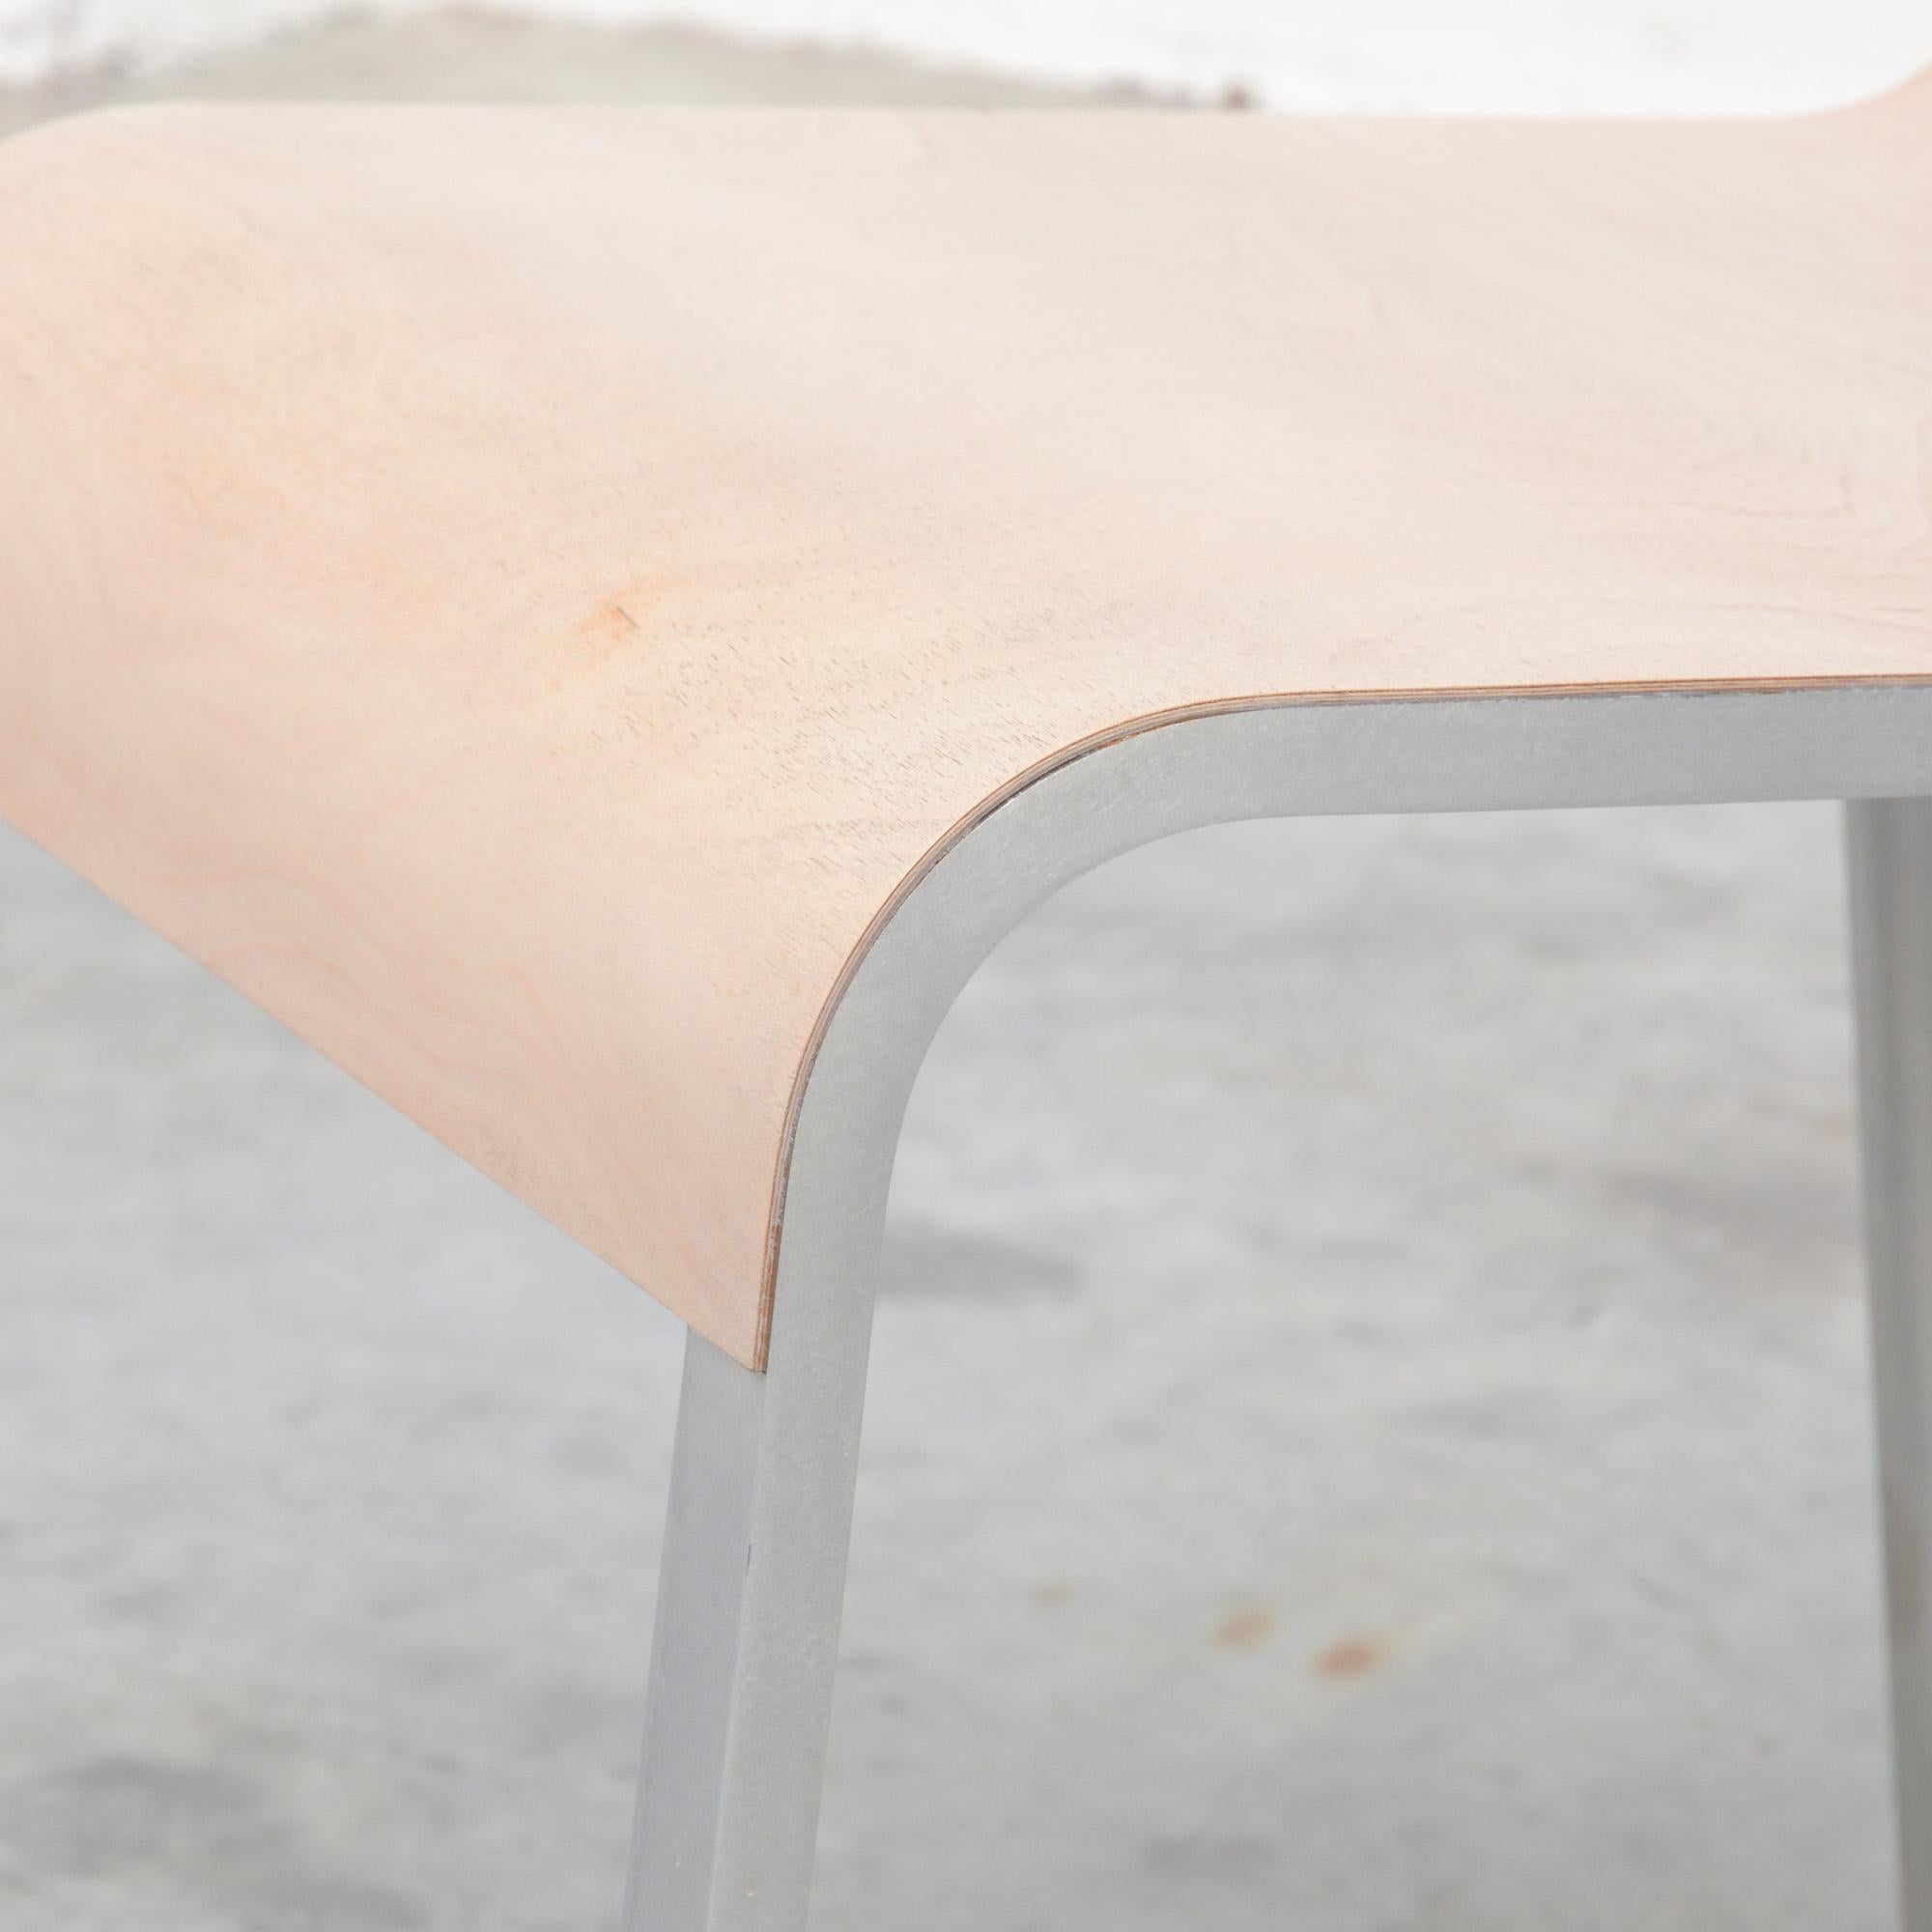 Minimalist Chair CN° II by Maarten Van Severen for Studio Maarten van Severen